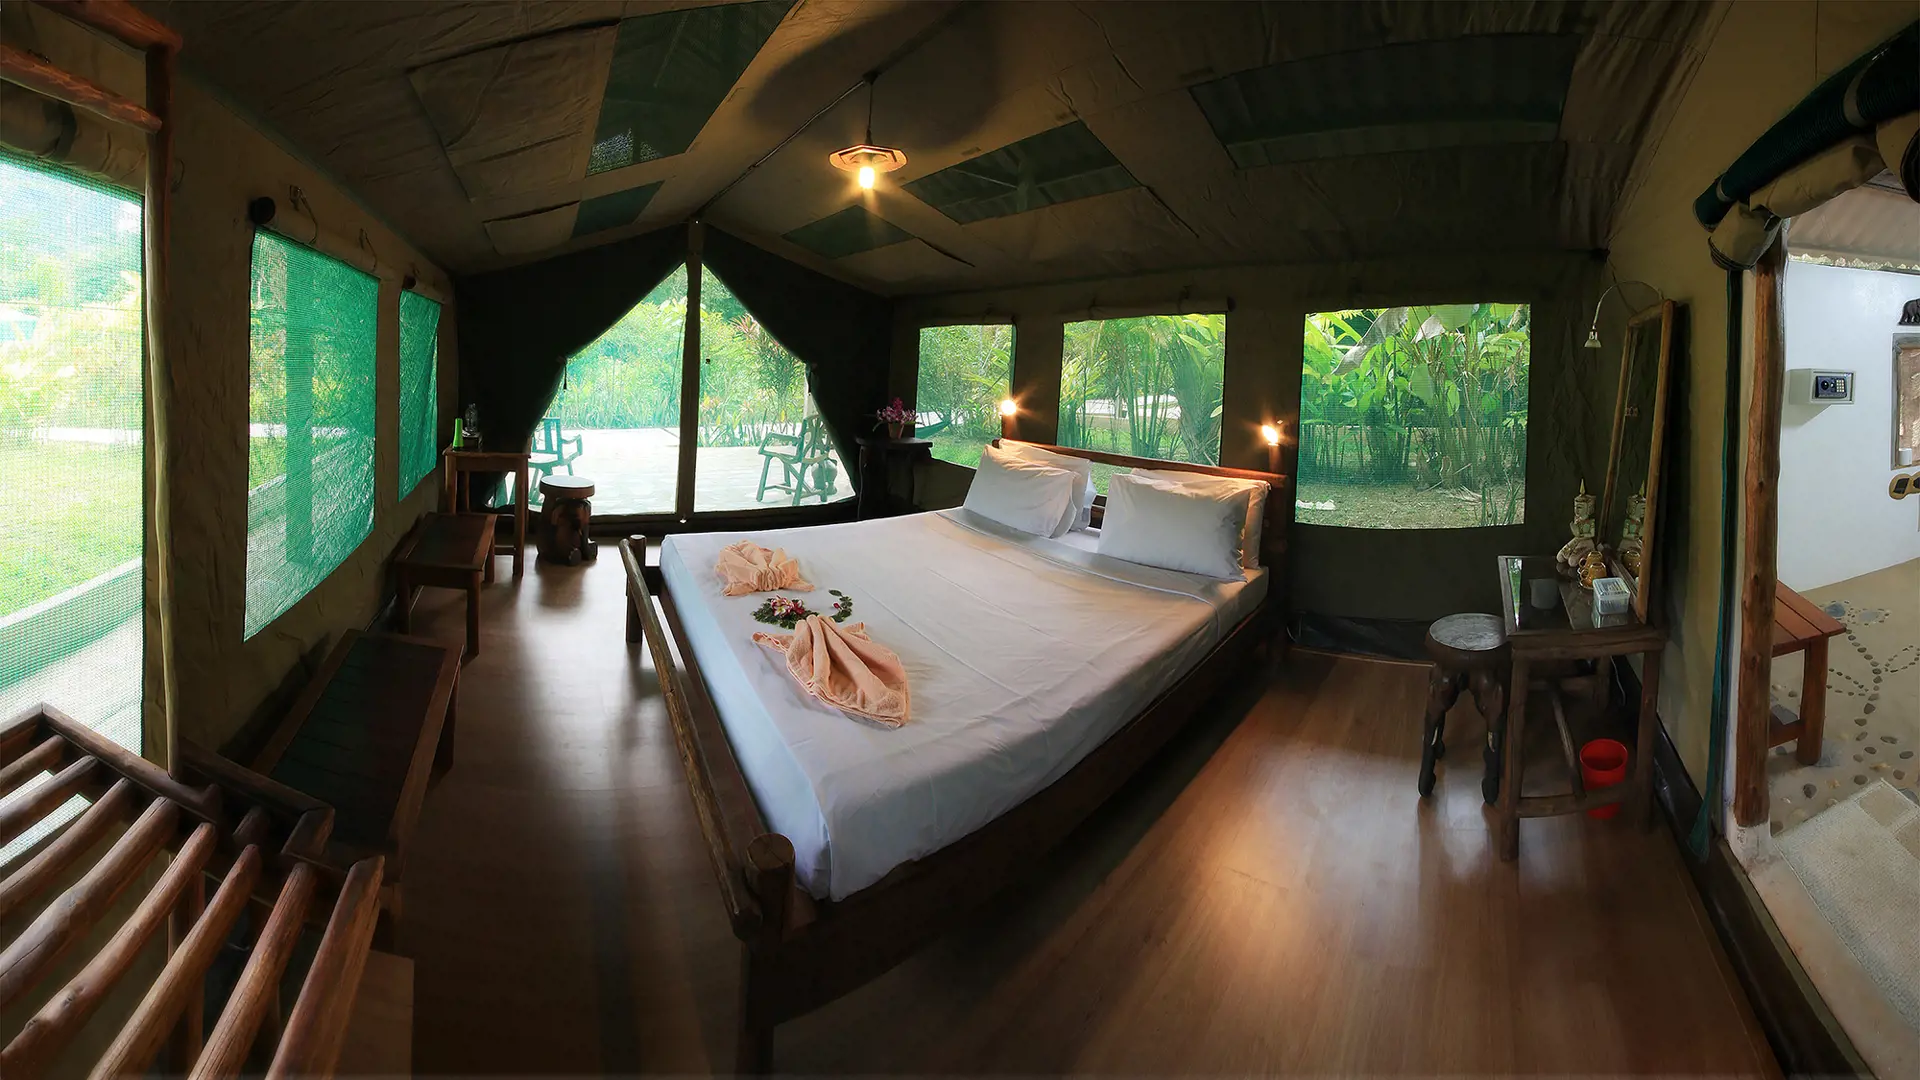 ELEPHANT HILLS - I indlogeres i flotte safaritelte med faste senge og eget bad og toilet. Det er fantastisk at gå til ro til lyden af junglen, der for alvor vågner når mørket falder på, Check Point Travel